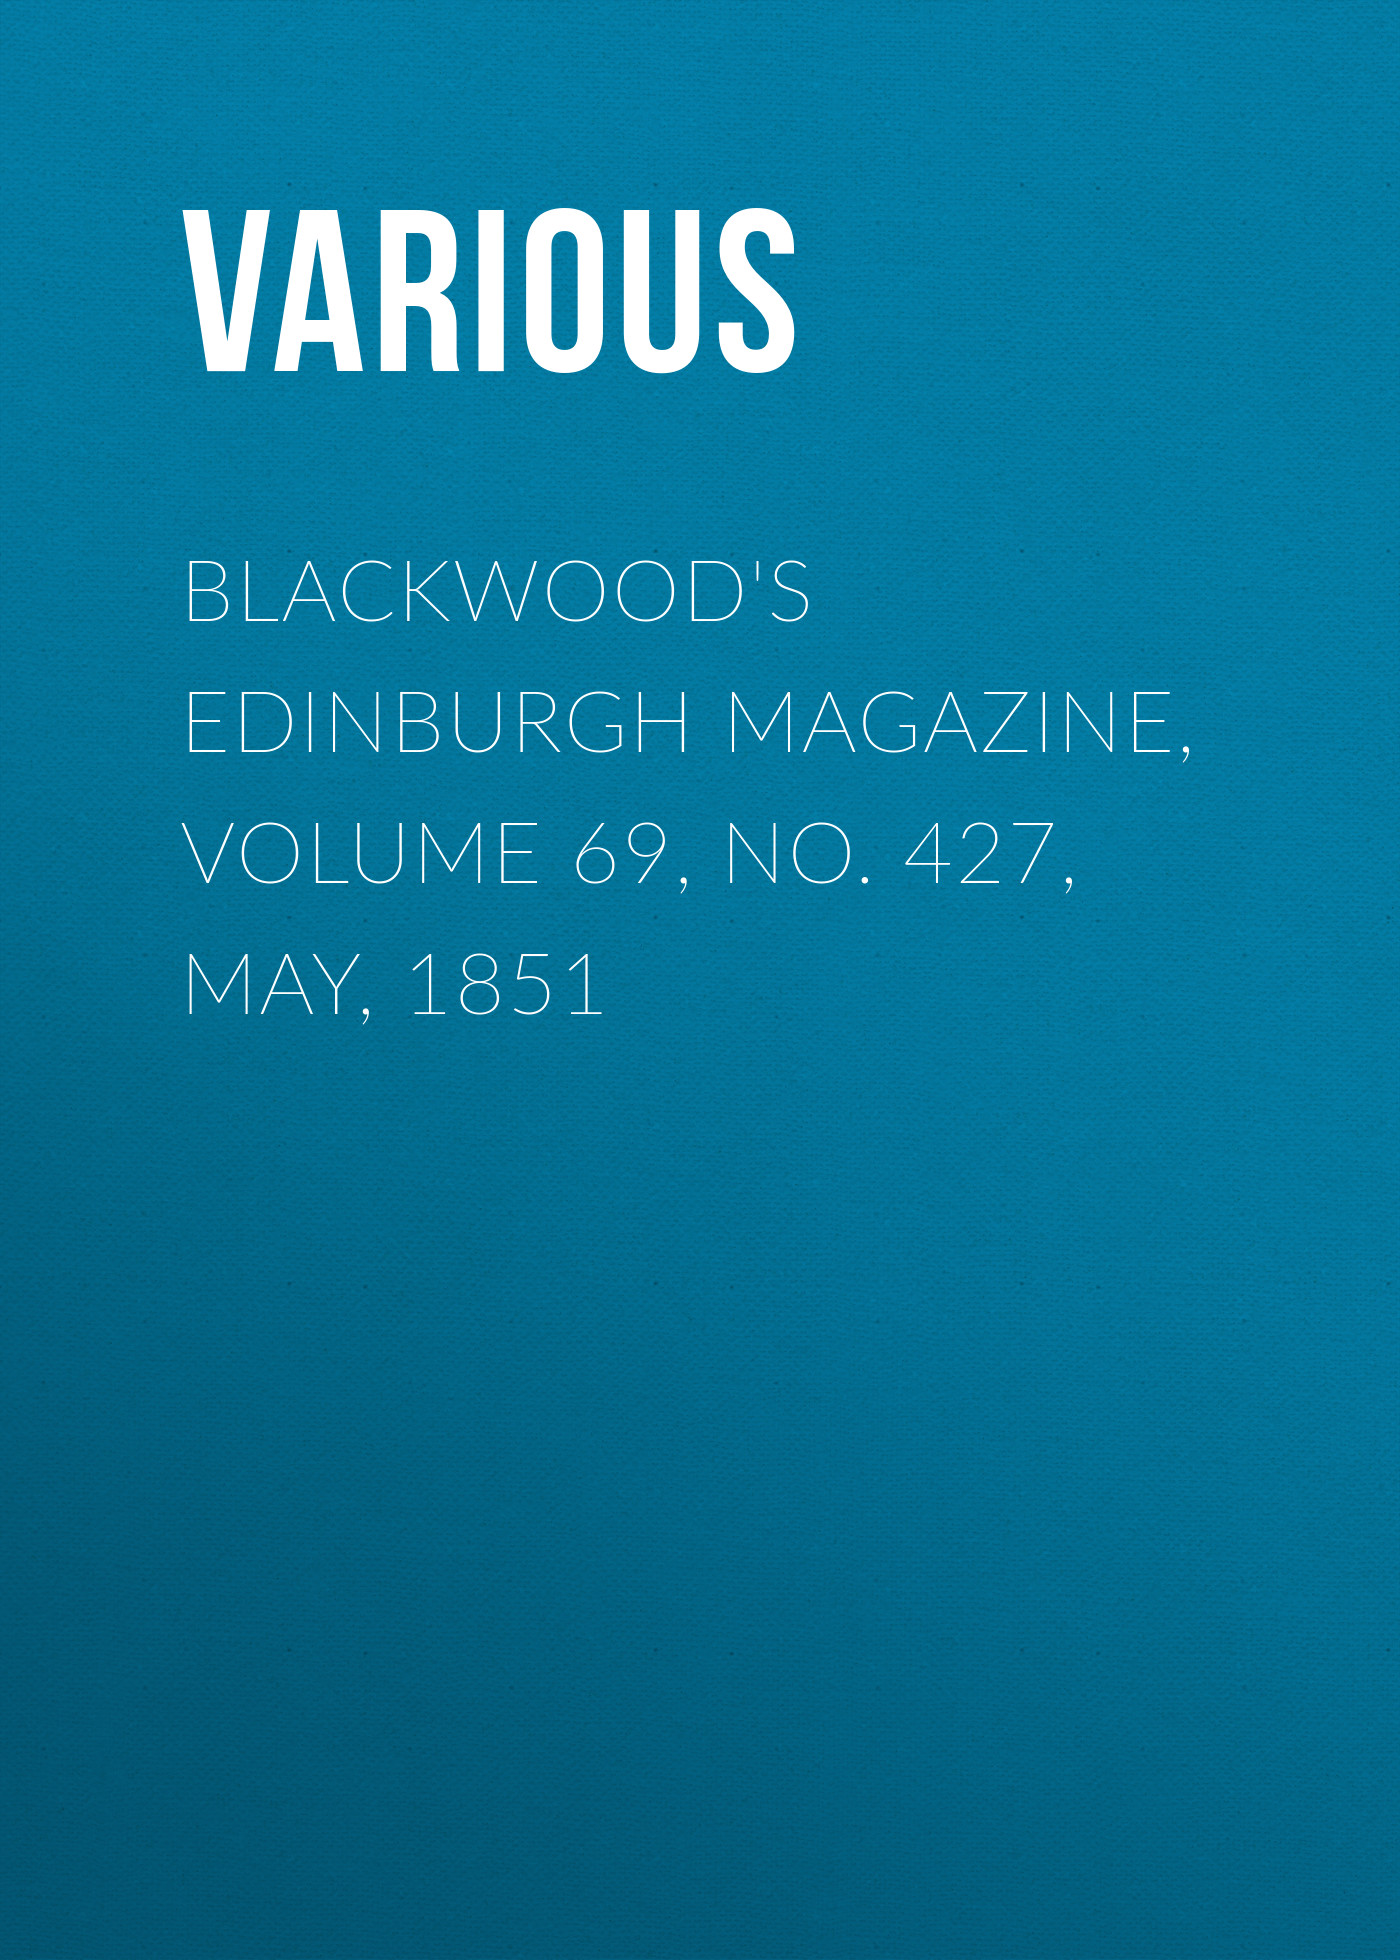 Книга Blackwood's Edinburgh Magazine, Volume 69, No. 427, May, 1851 из серии , созданная  Various, может относится к жанру Журналы, Зарубежная образовательная литература, Книги о Путешествиях. Стоимость электронной книги Blackwood's Edinburgh Magazine, Volume 69, No. 427, May, 1851 с идентификатором 25568719 составляет 0 руб.